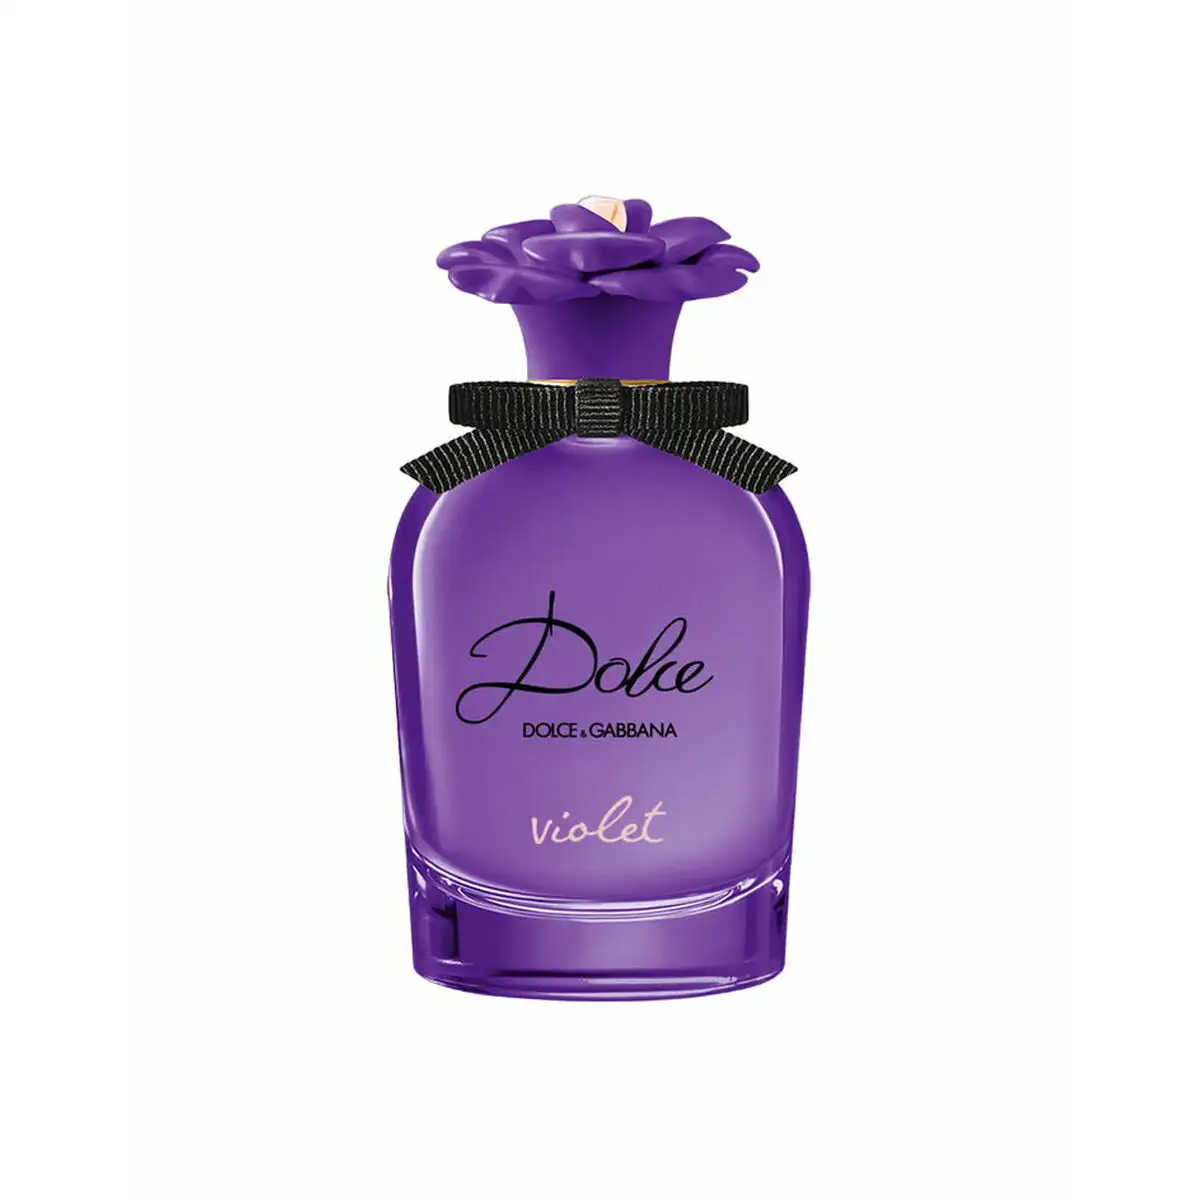 Parfum femme dolce gabbana edt dolce violet 30 ml_7641. DIAYTAR SENEGAL - Là où Chaque Achat Contribue à un Rêve. Naviguez à travers notre boutique en ligne et soutenez des artisans talentueux tout en acquérant des trésors.